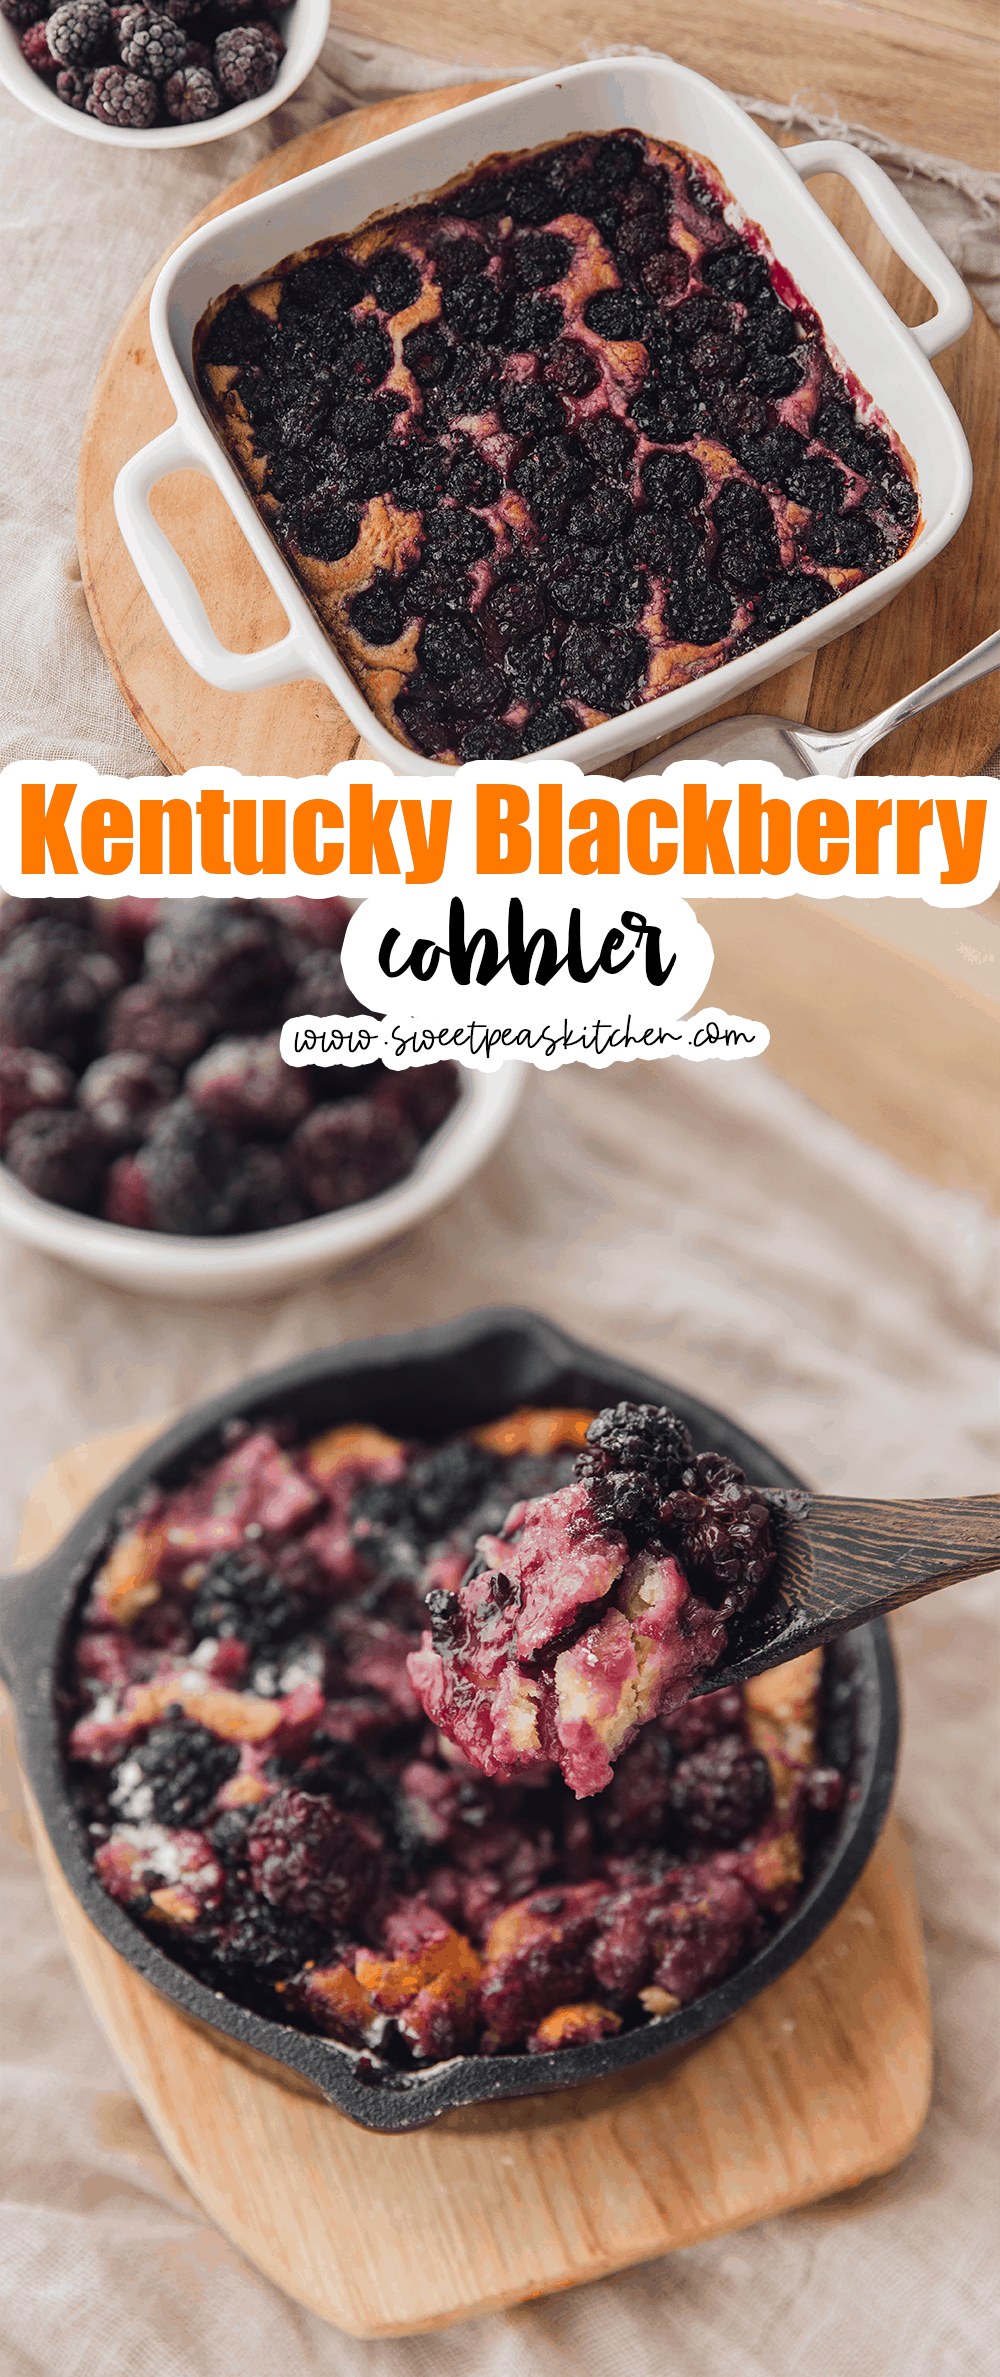 Kentucky Blackberry Cobbler